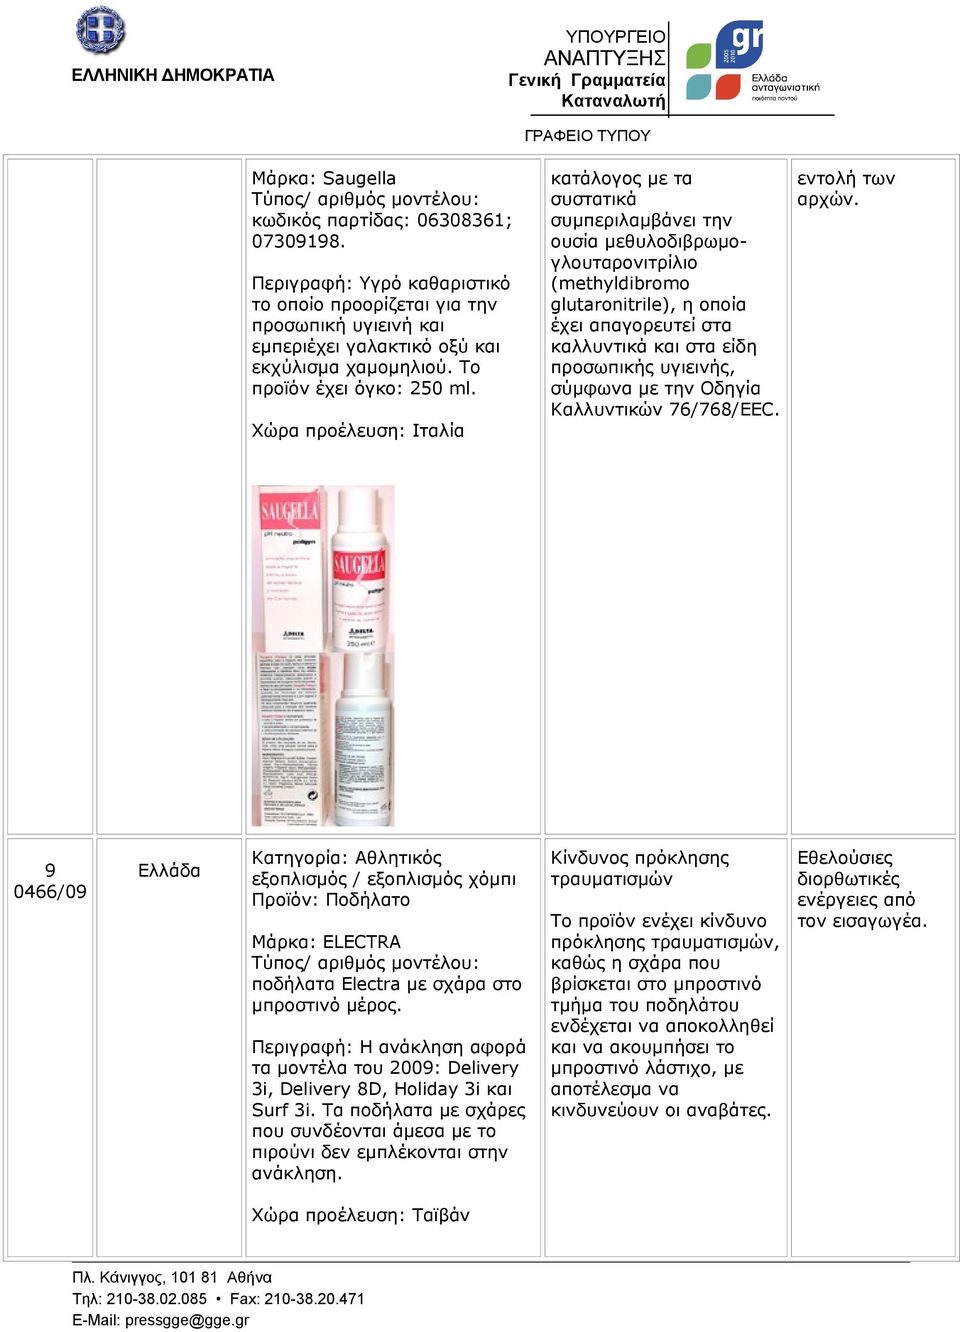 Χώρα προέλευση: Ιταλία κατάλογος με τα συστατικά συμπεριλαμβάνει την ουσία μεθυλοδιβρωμογλουταρονιτρίλιο (methyldibromo glutaronitrile), η οποία έχει απαγορευτεί στα καλλυντικά και στα είδη